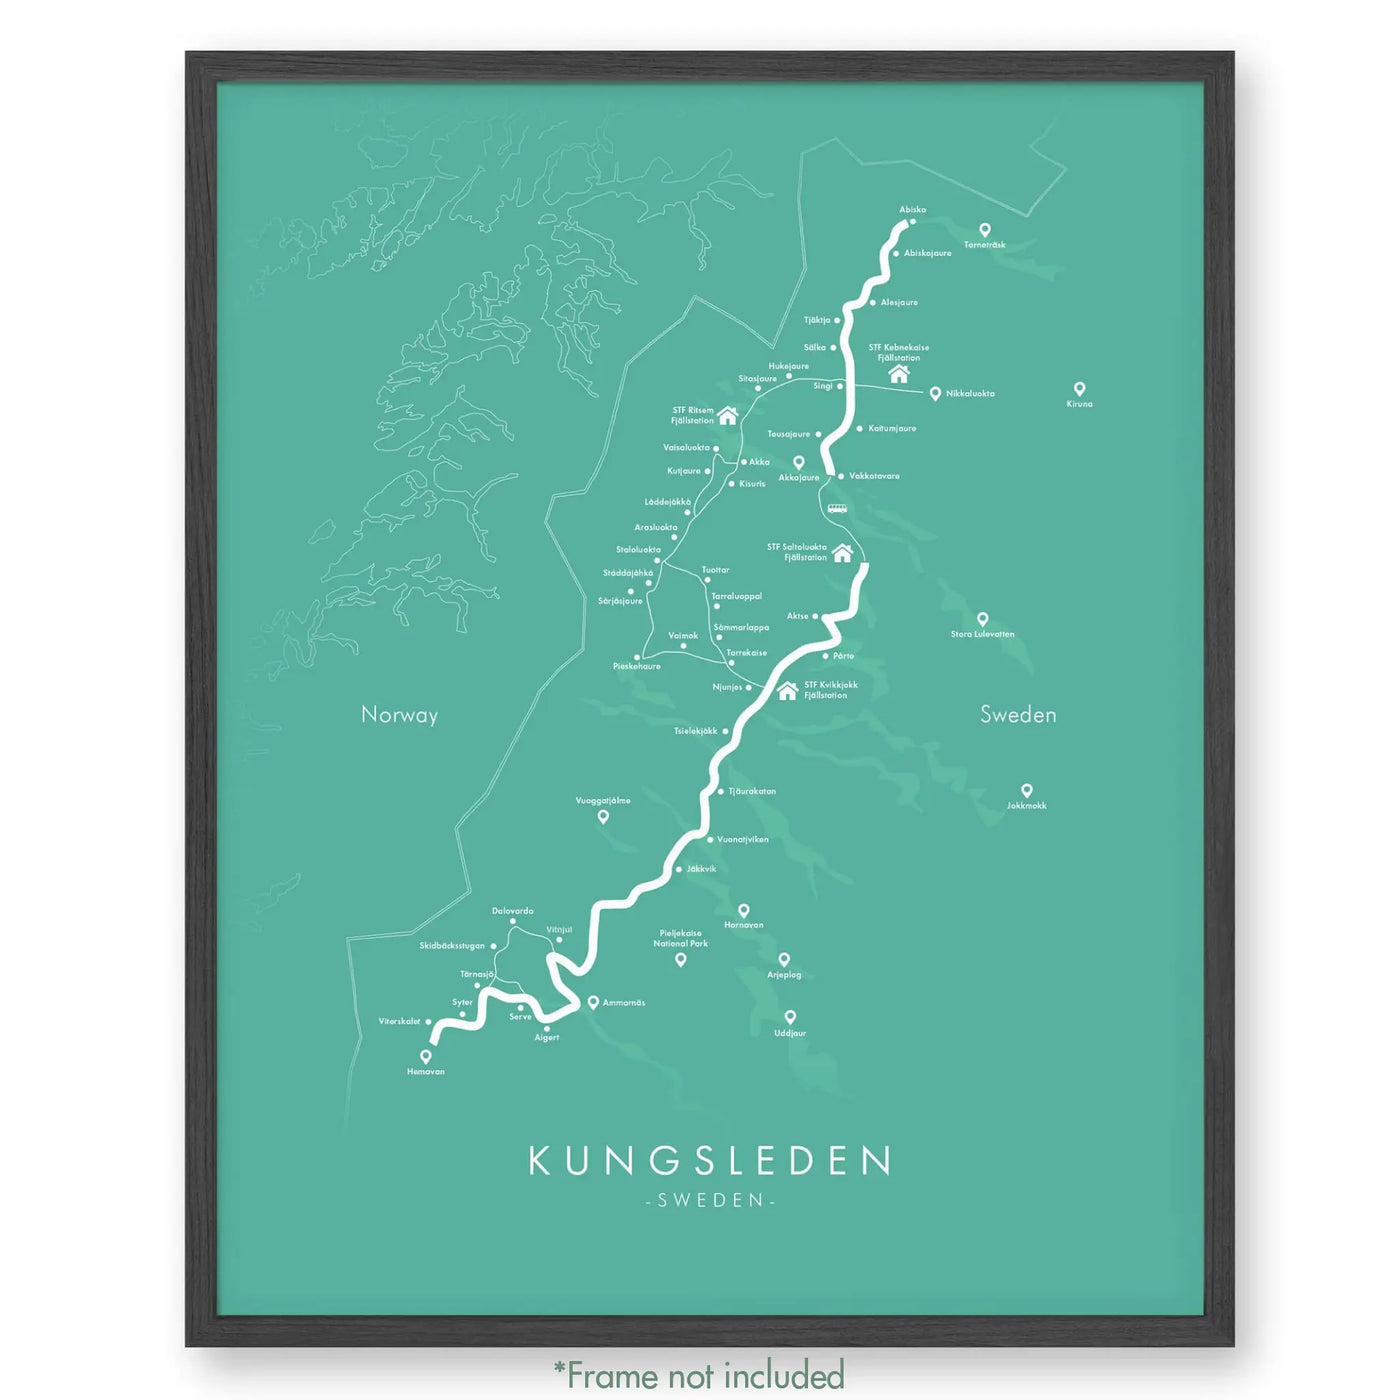 Trail Poster of Kungsleden - Teal